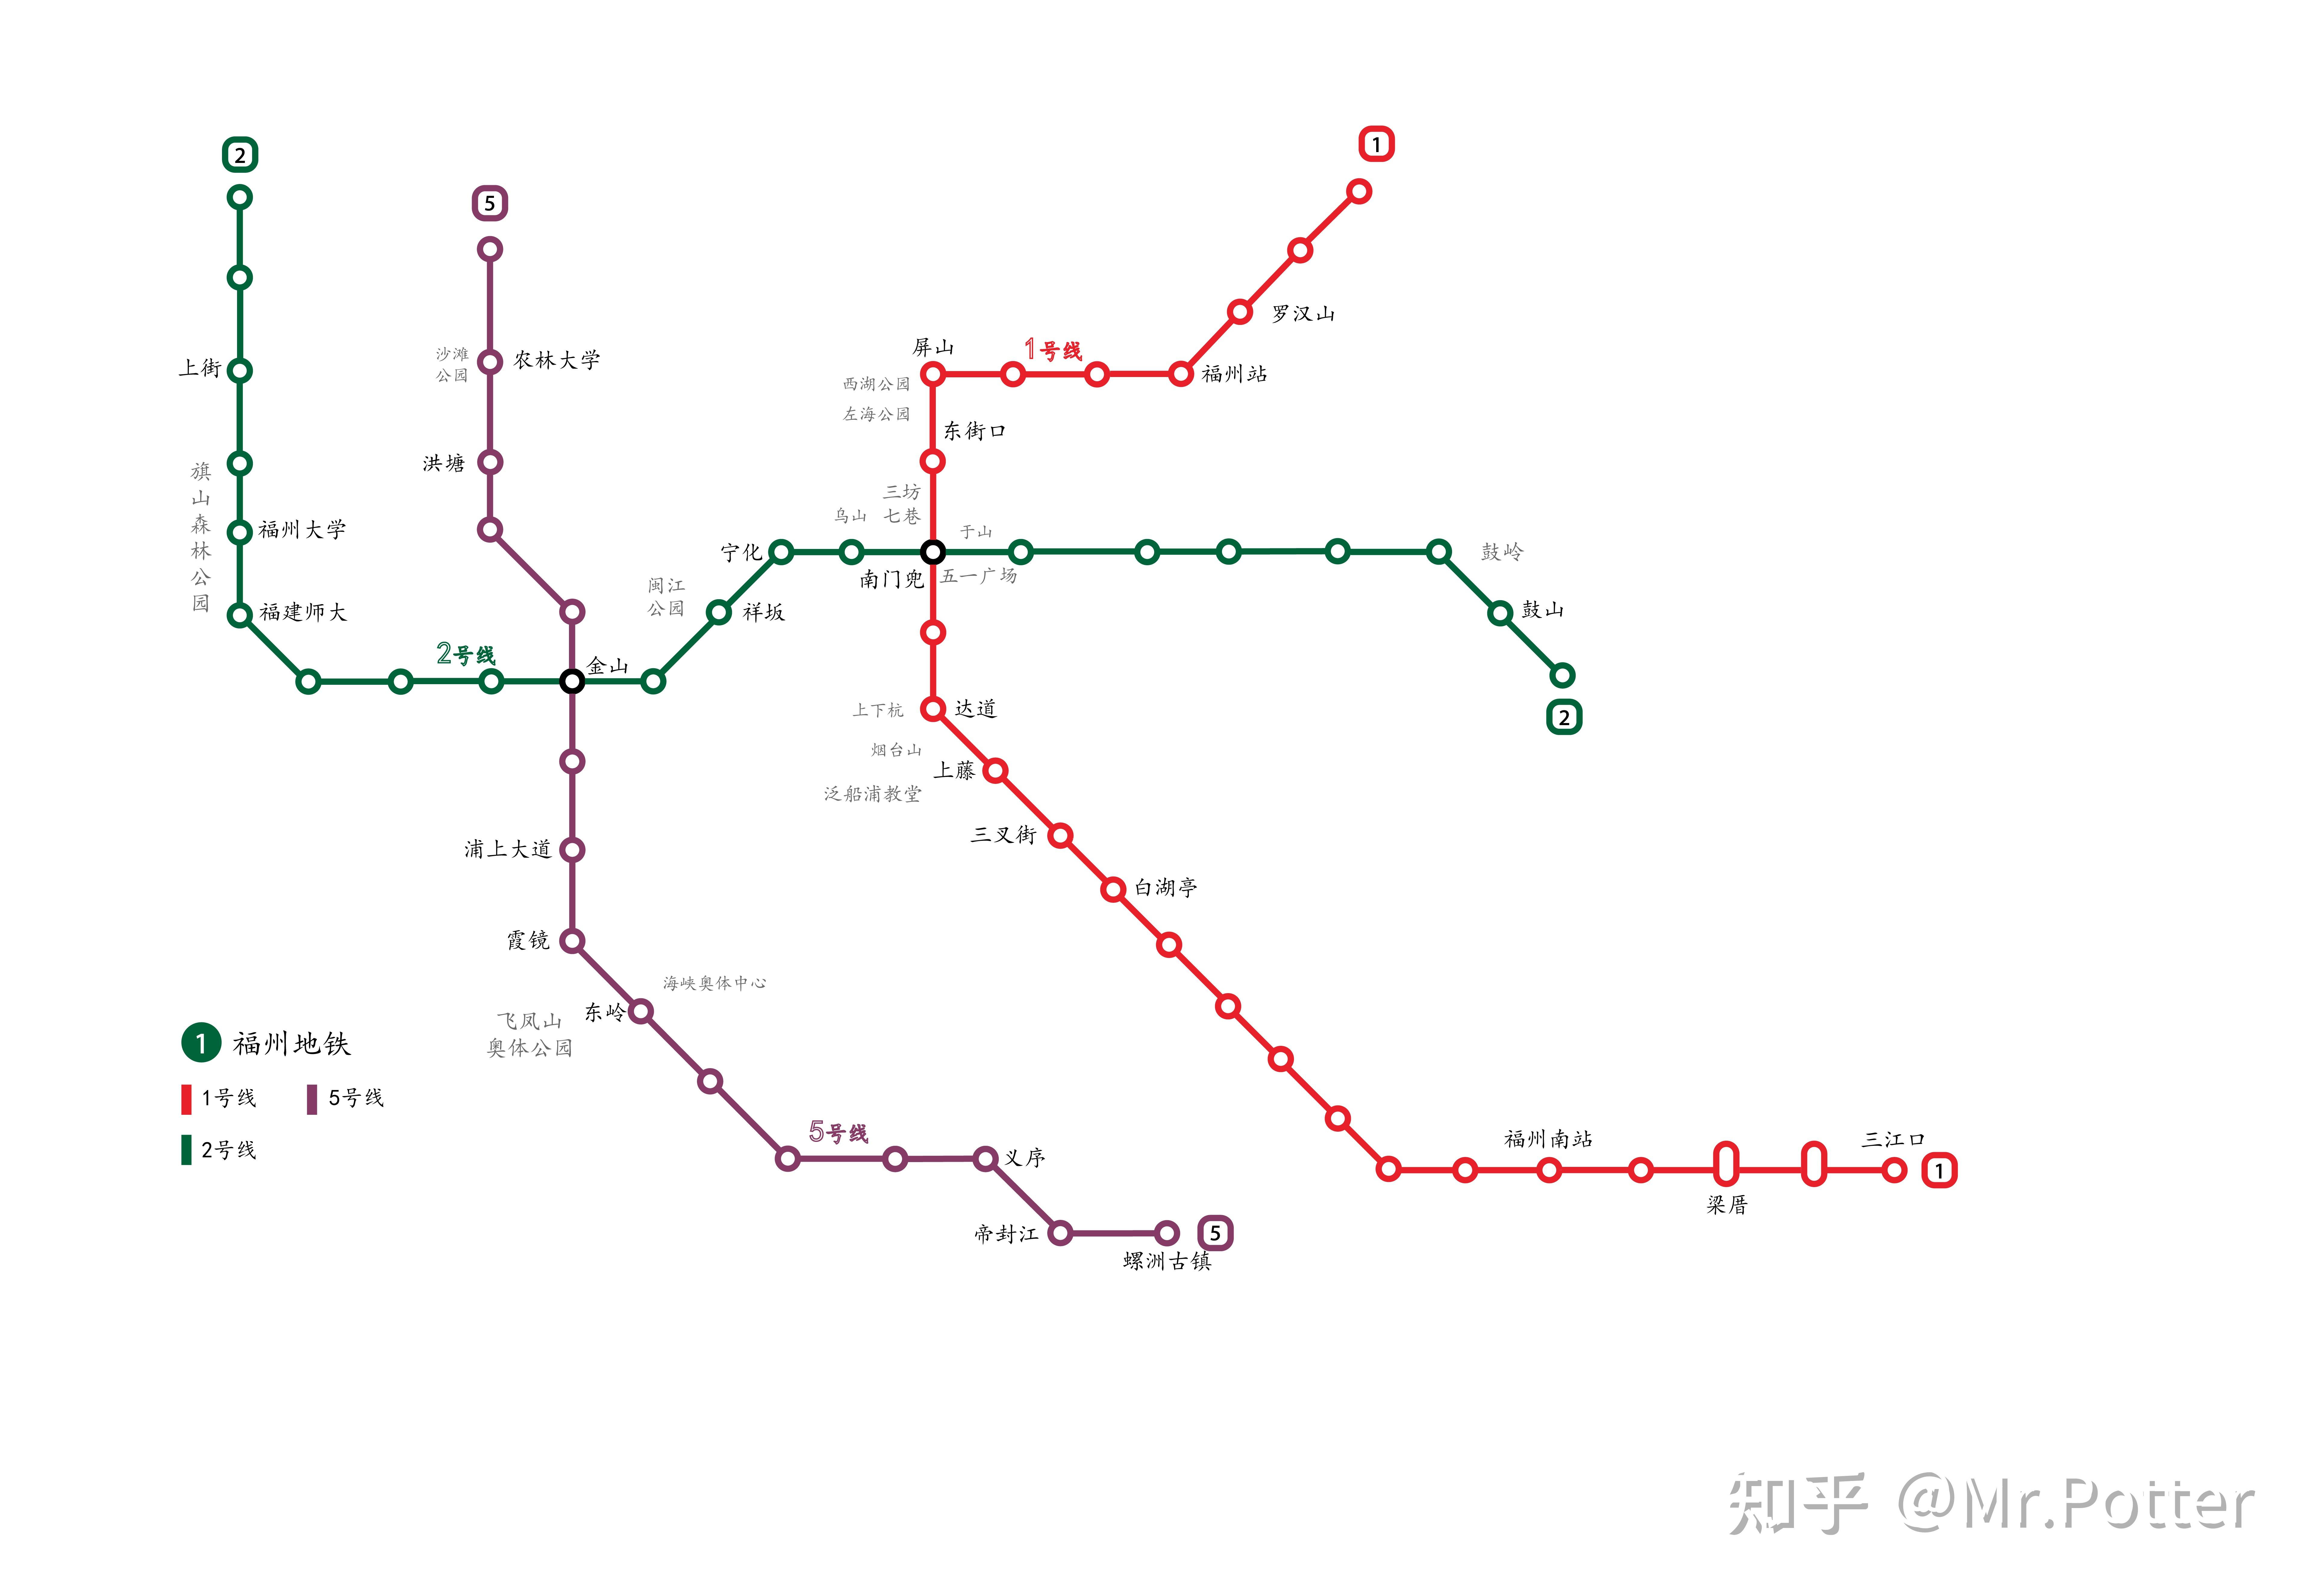 地铁线路展示柜:01福州地铁